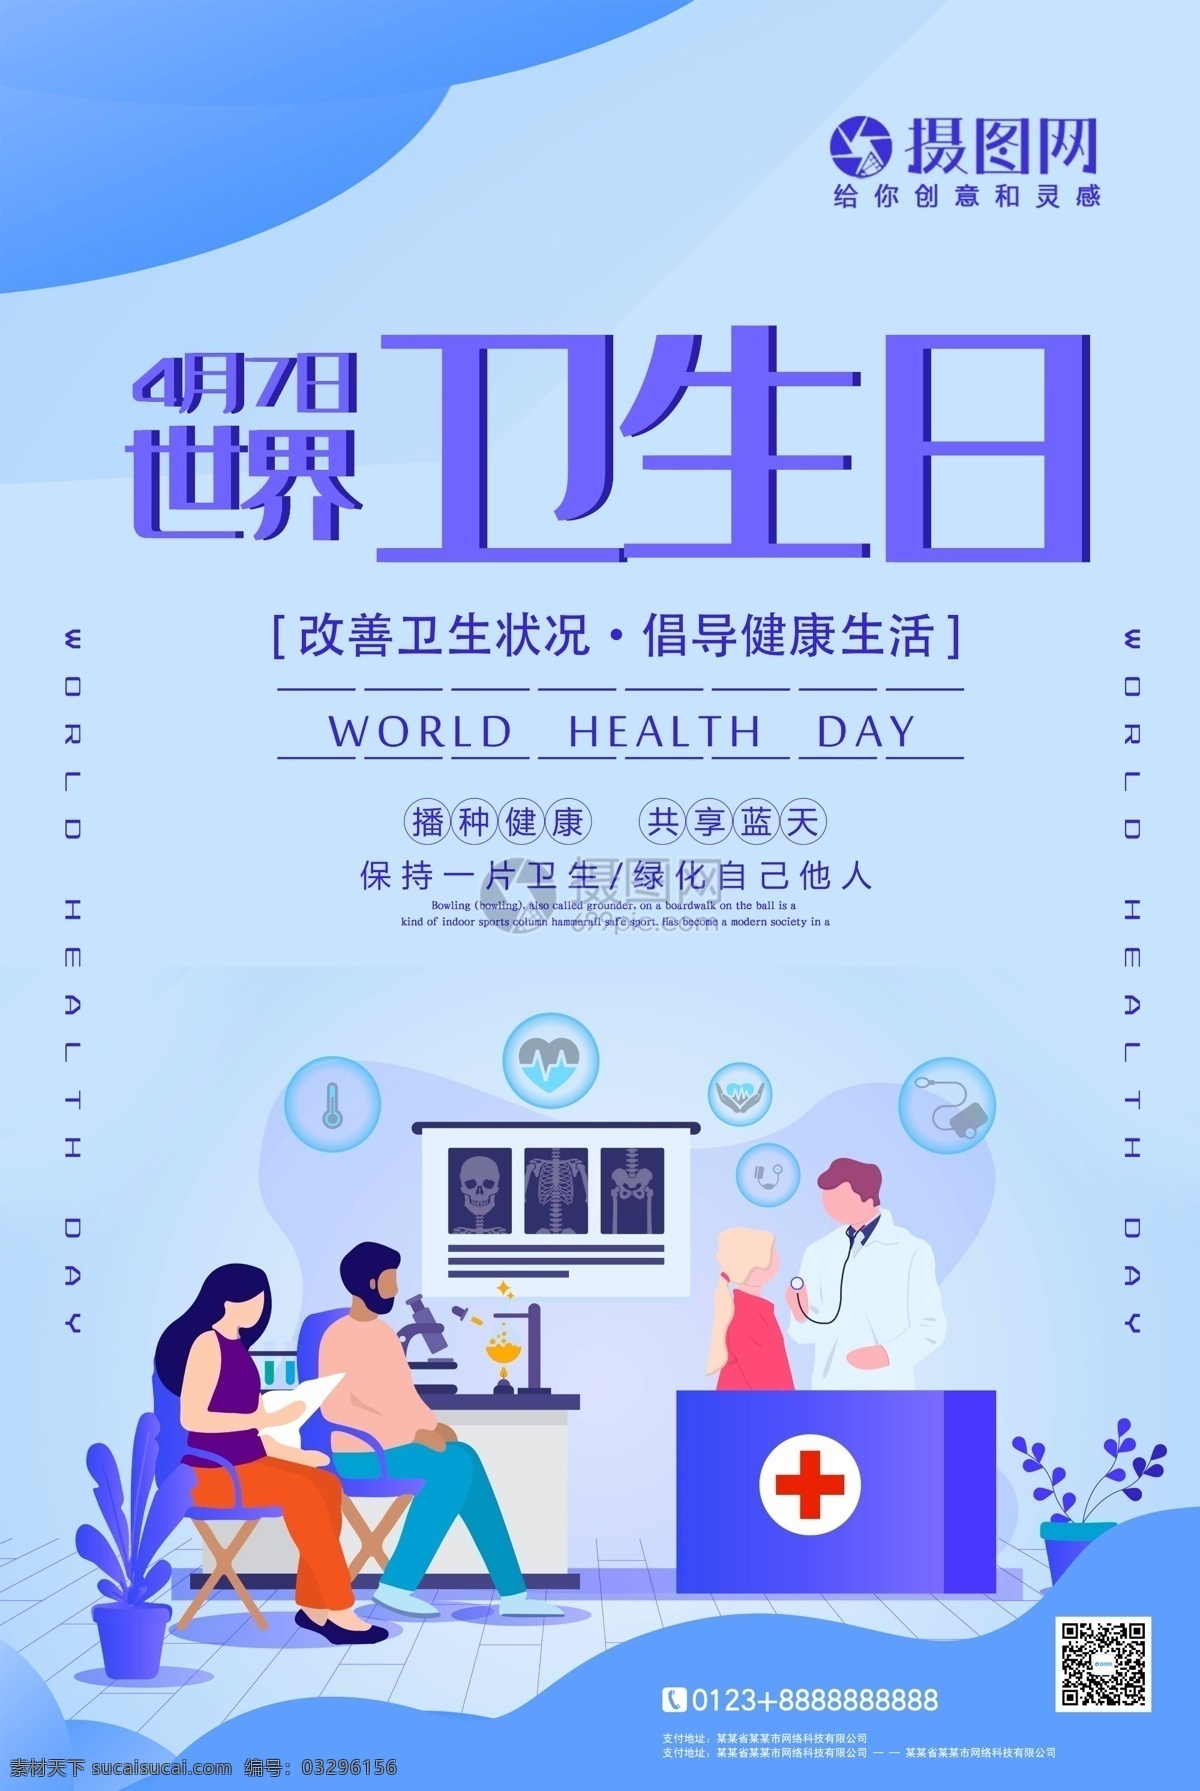 简约 世界 卫生日 宣传海报 世界卫生日 卫生 健康 宣传 海报